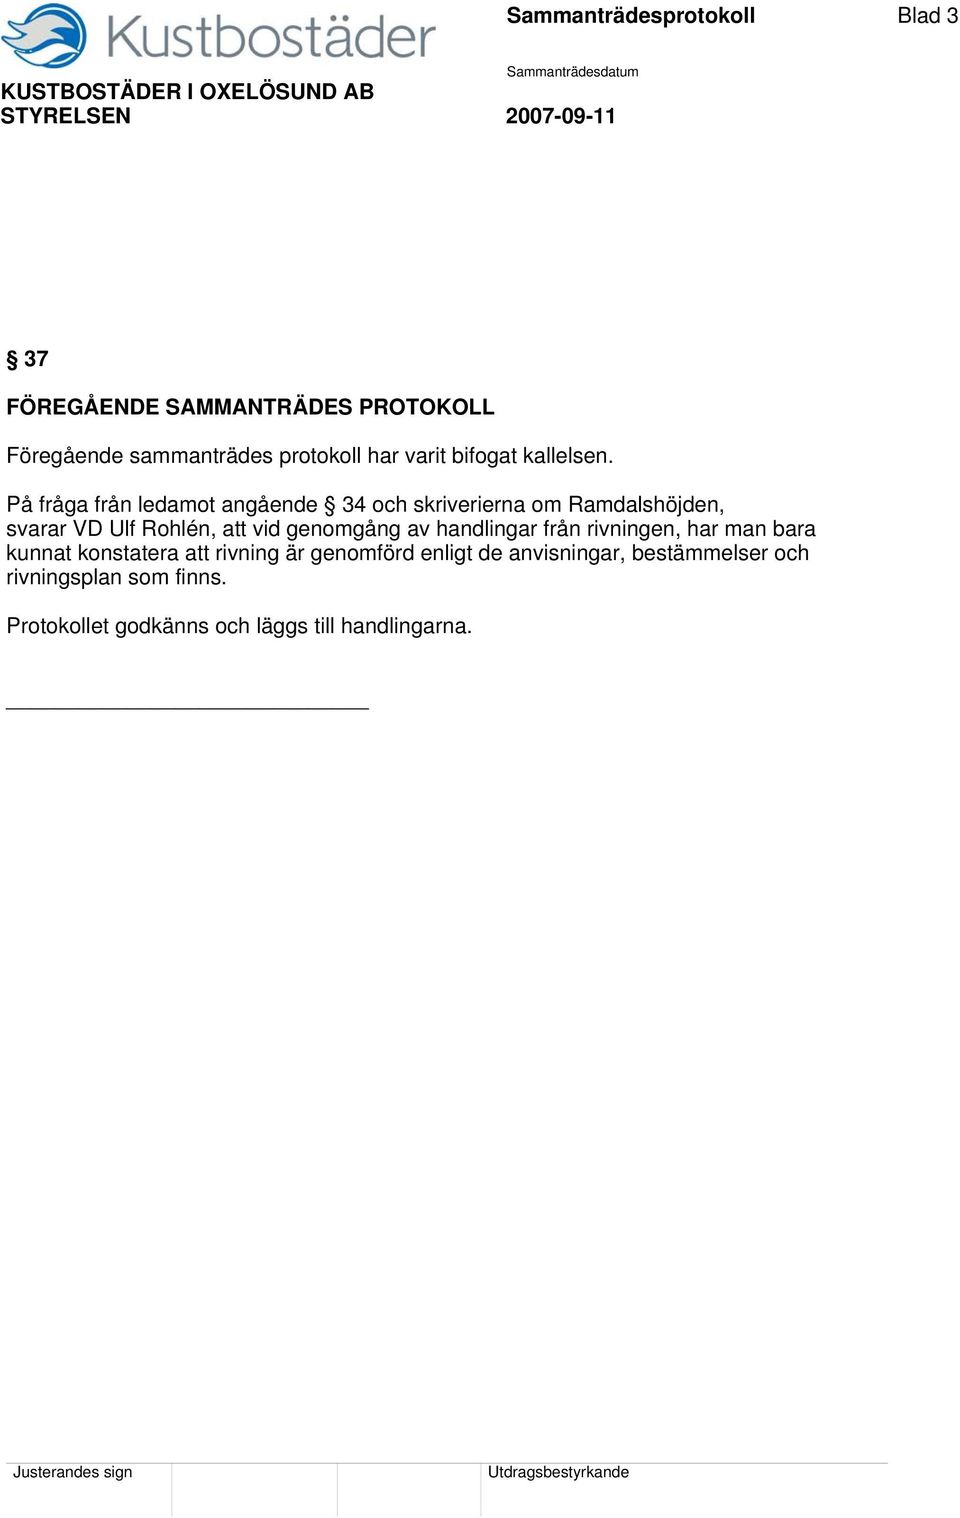 På fråga från ledamot angående 34 och skriverierna om Ramdalshöjden, svarar VD Ulf Rohlén, att vid genomgång